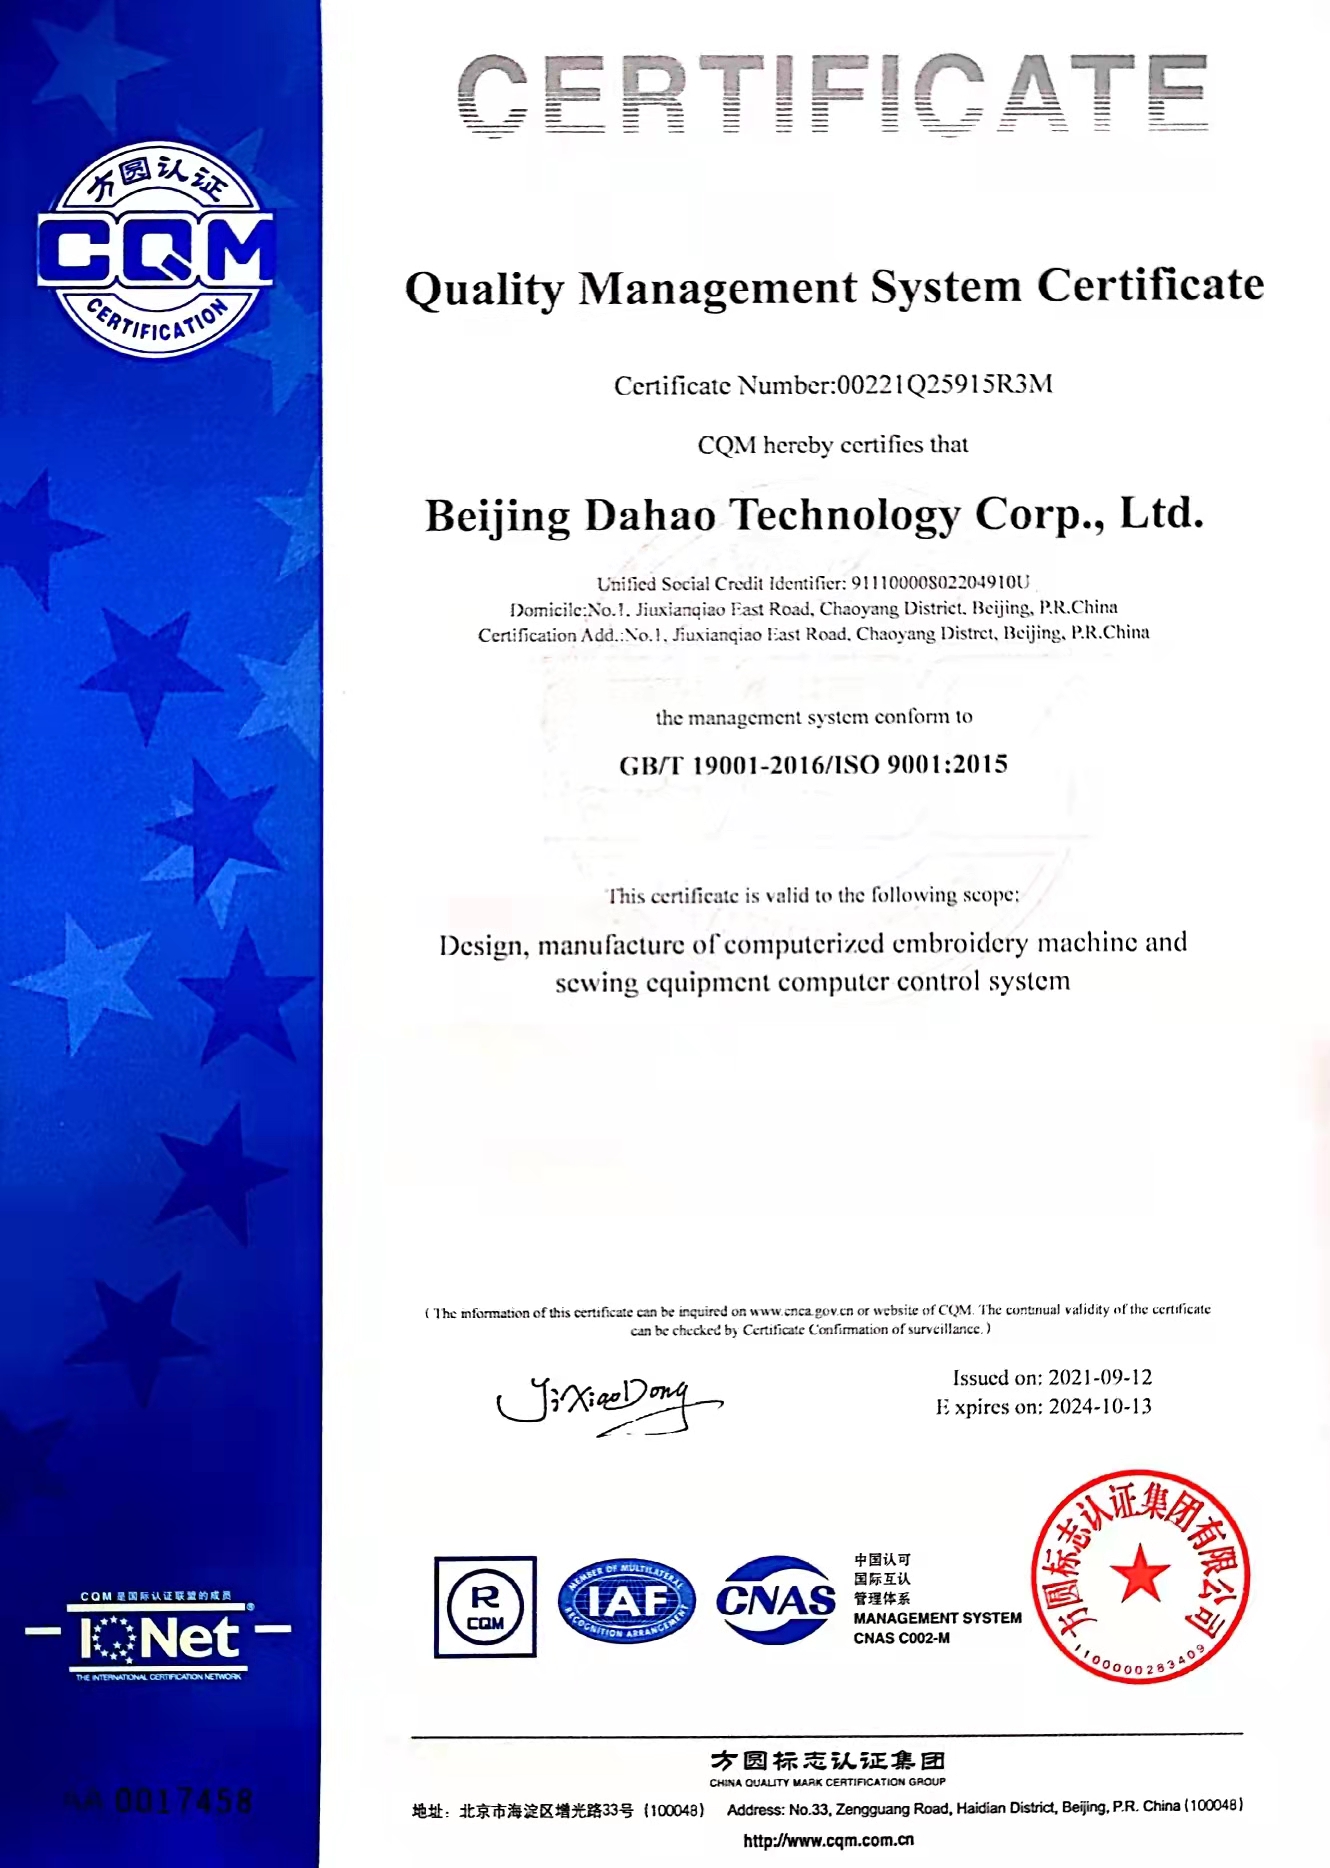 大豪科技质量管理体系证书-英文版